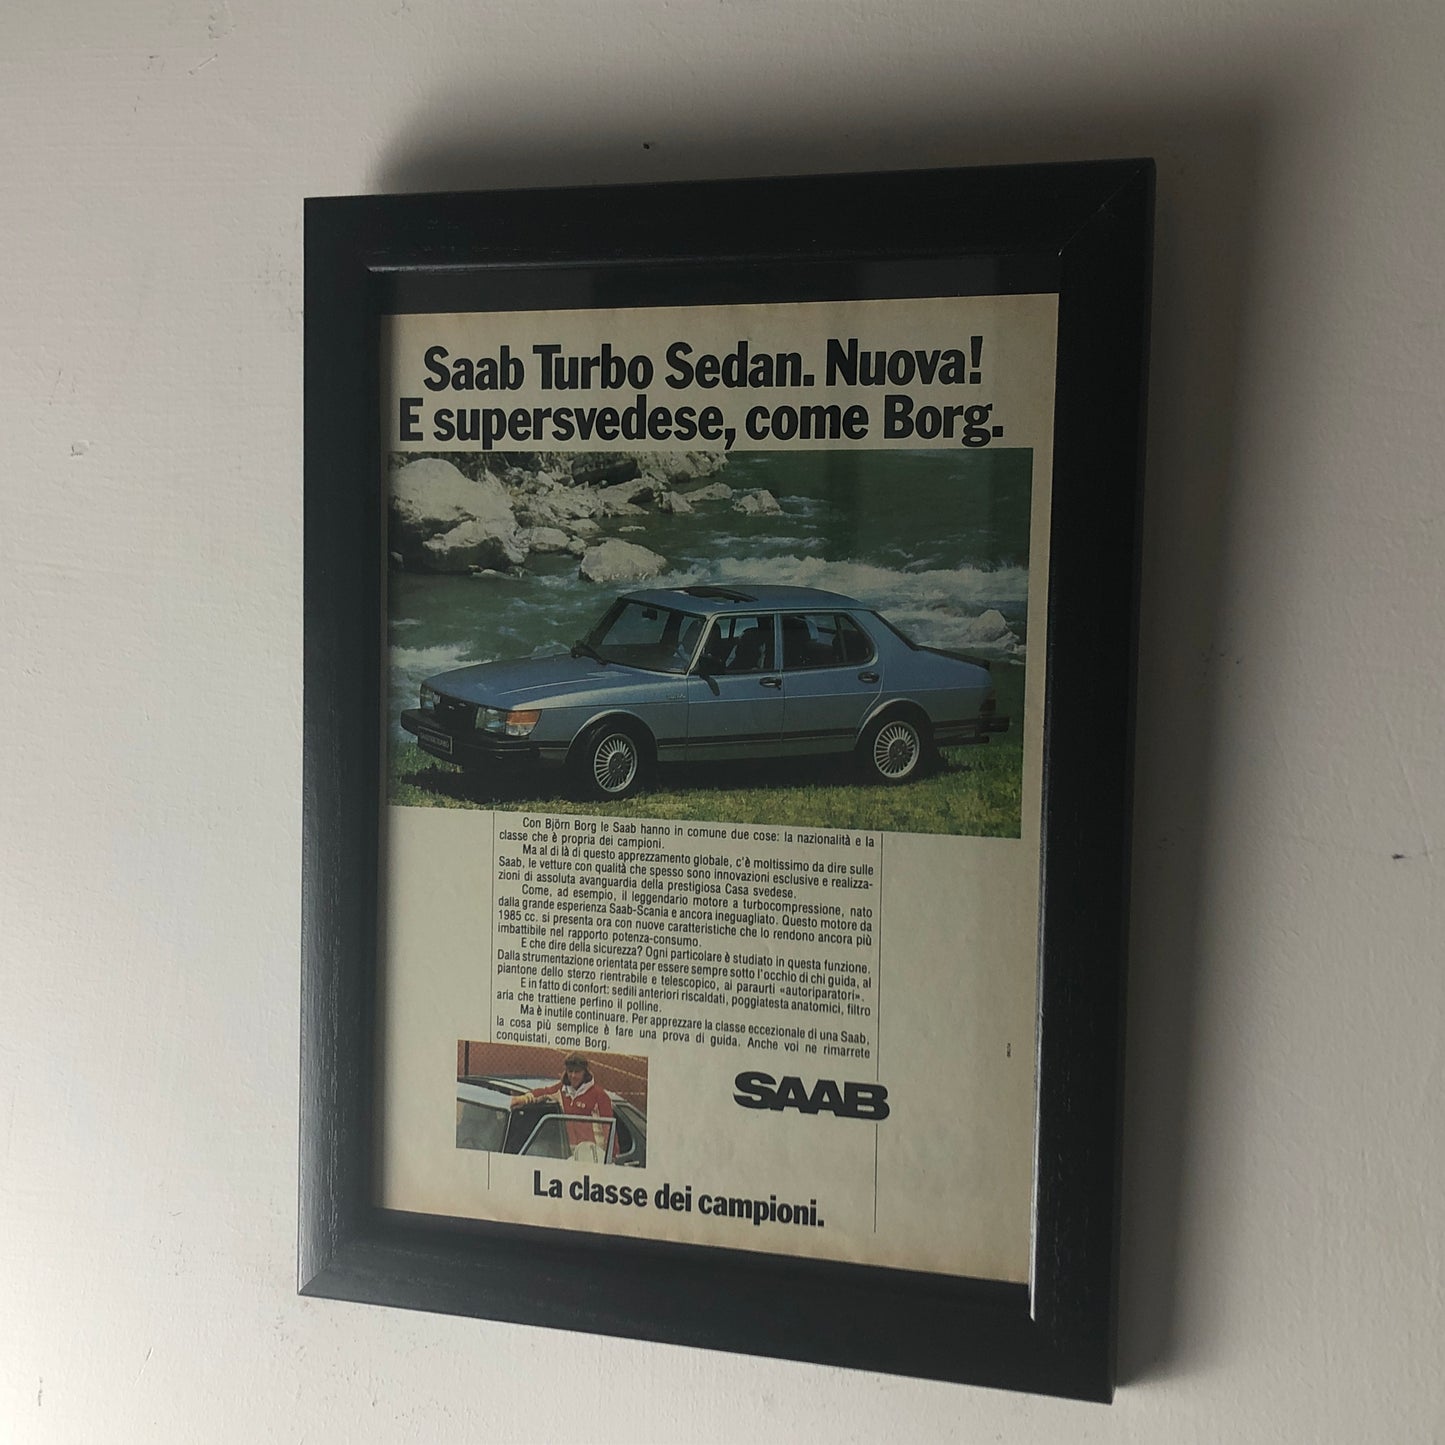 Saab, Advertising Year 1981 Saab Turbo Sedan New and Super Swedish Like Borg